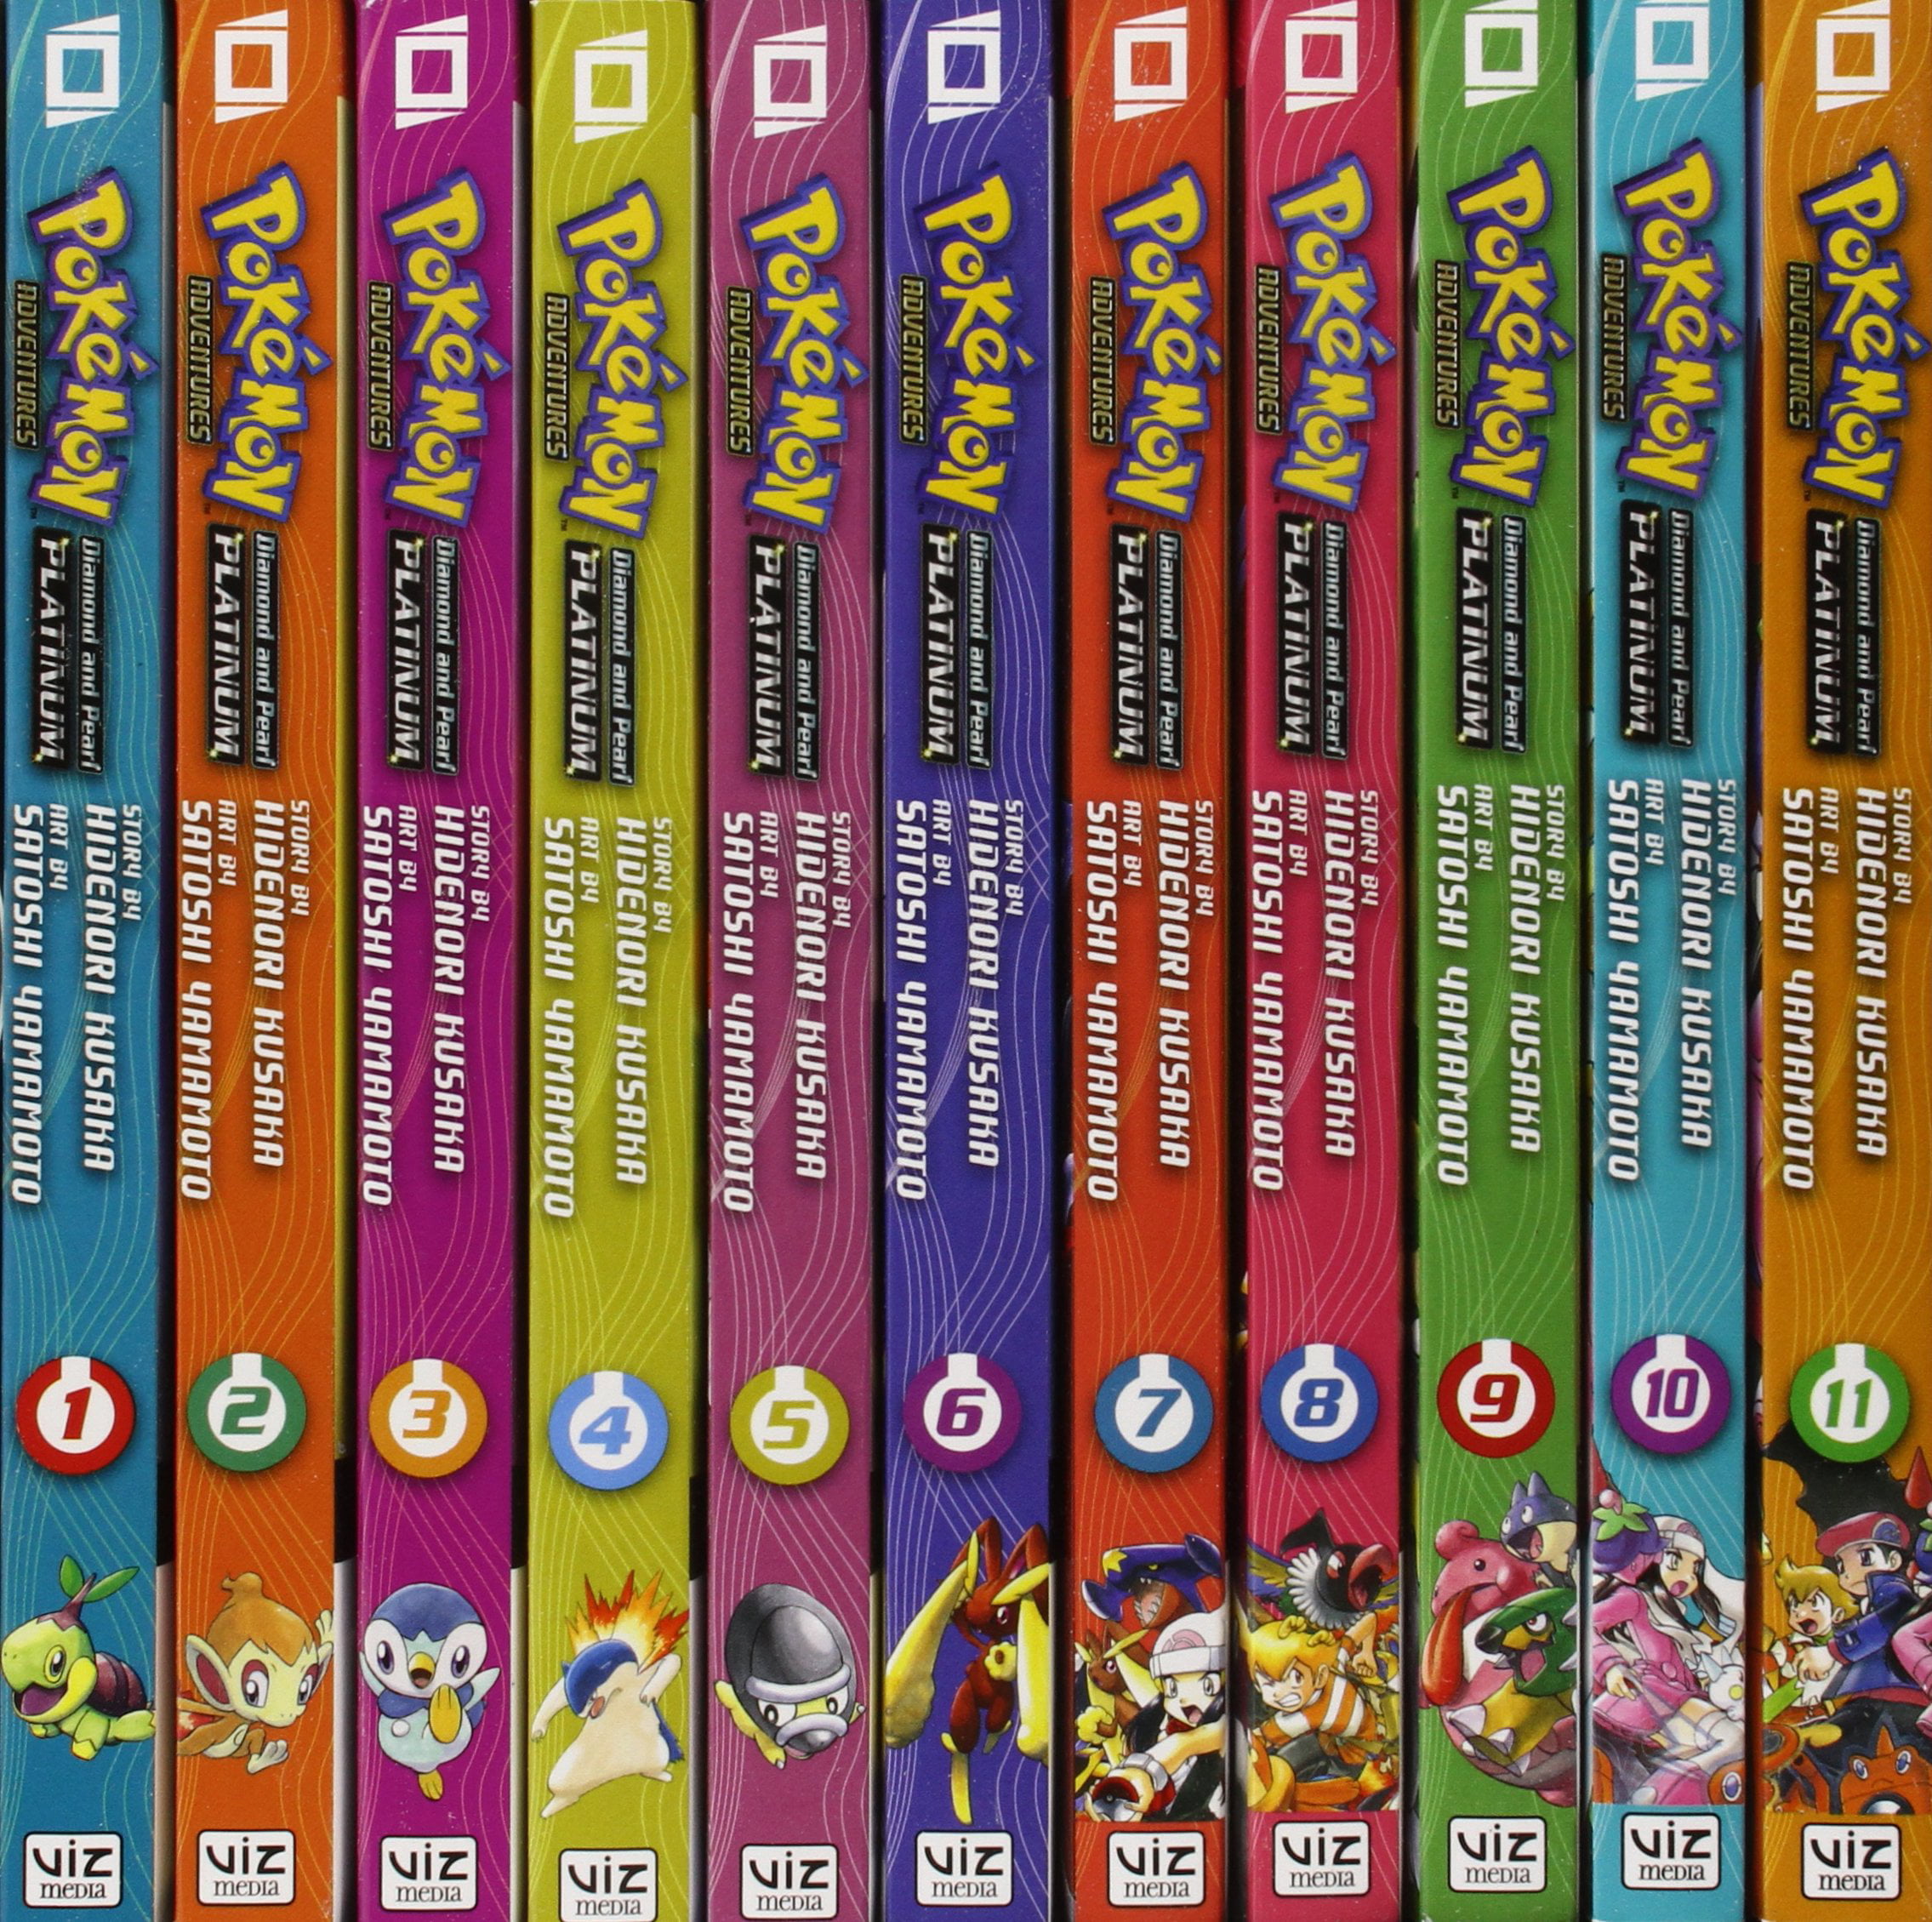 Pokémon Diamond and Pearl Adventure! Box Set (Pokémon Manga Box